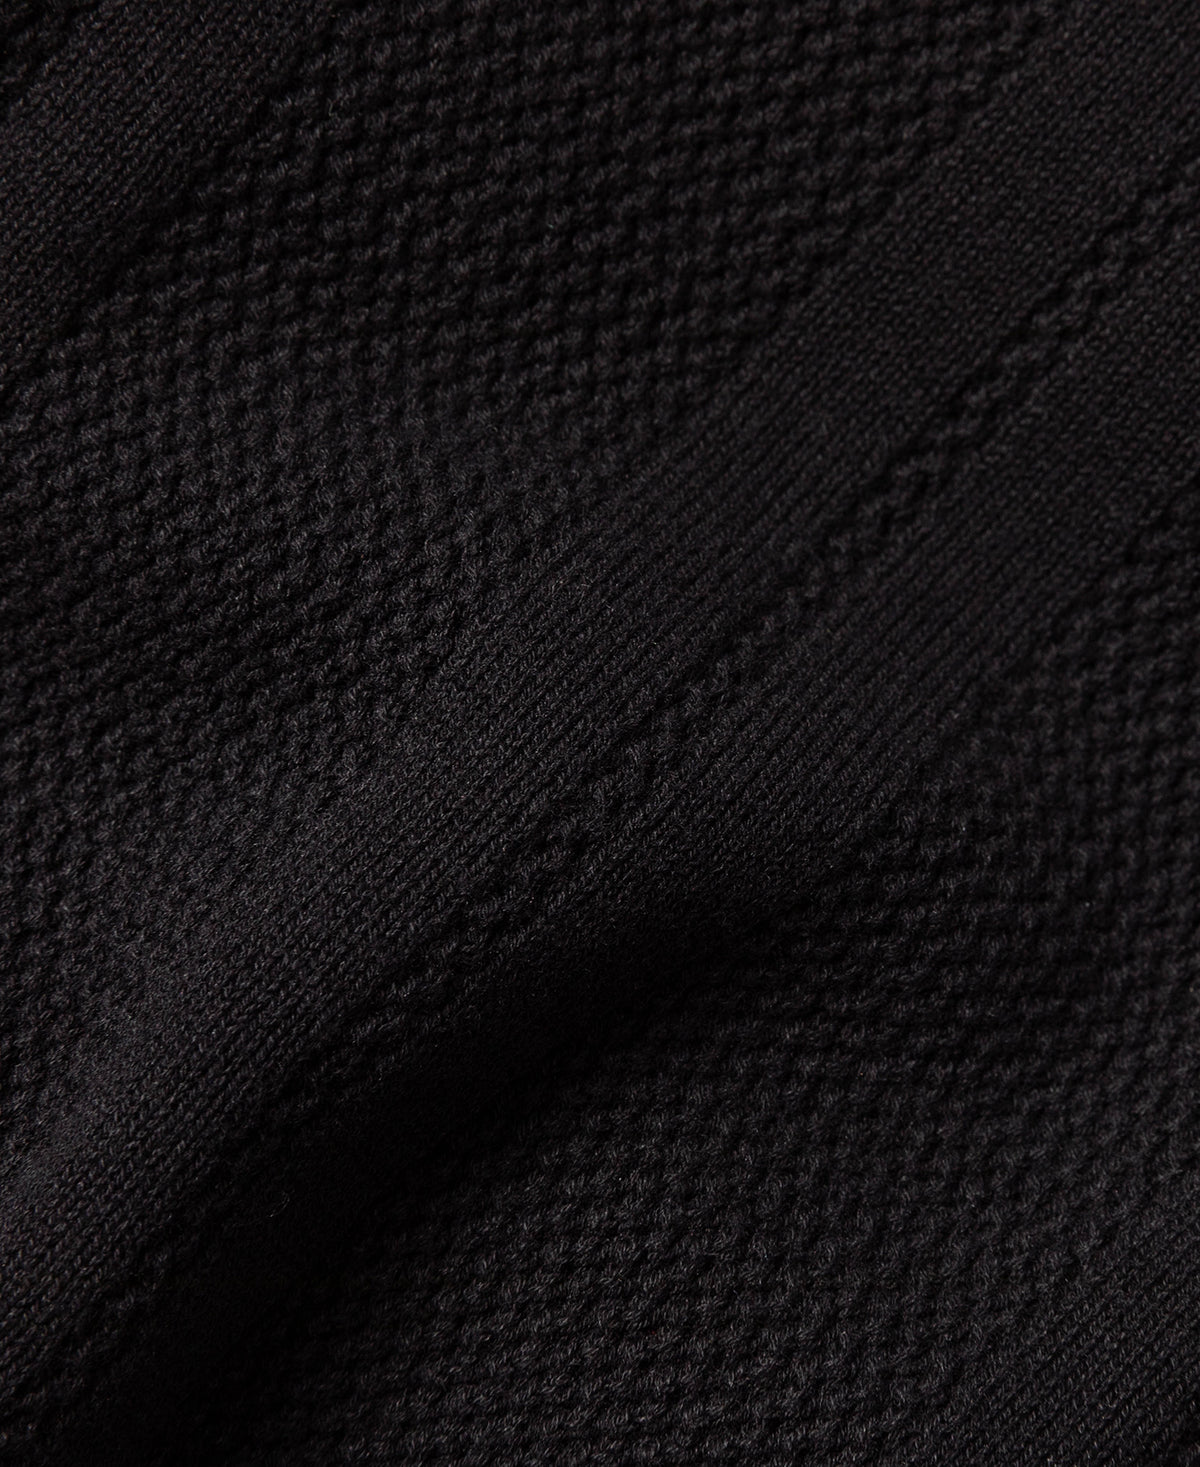 Retro Knitted Jacquard Polo Shirt - Black